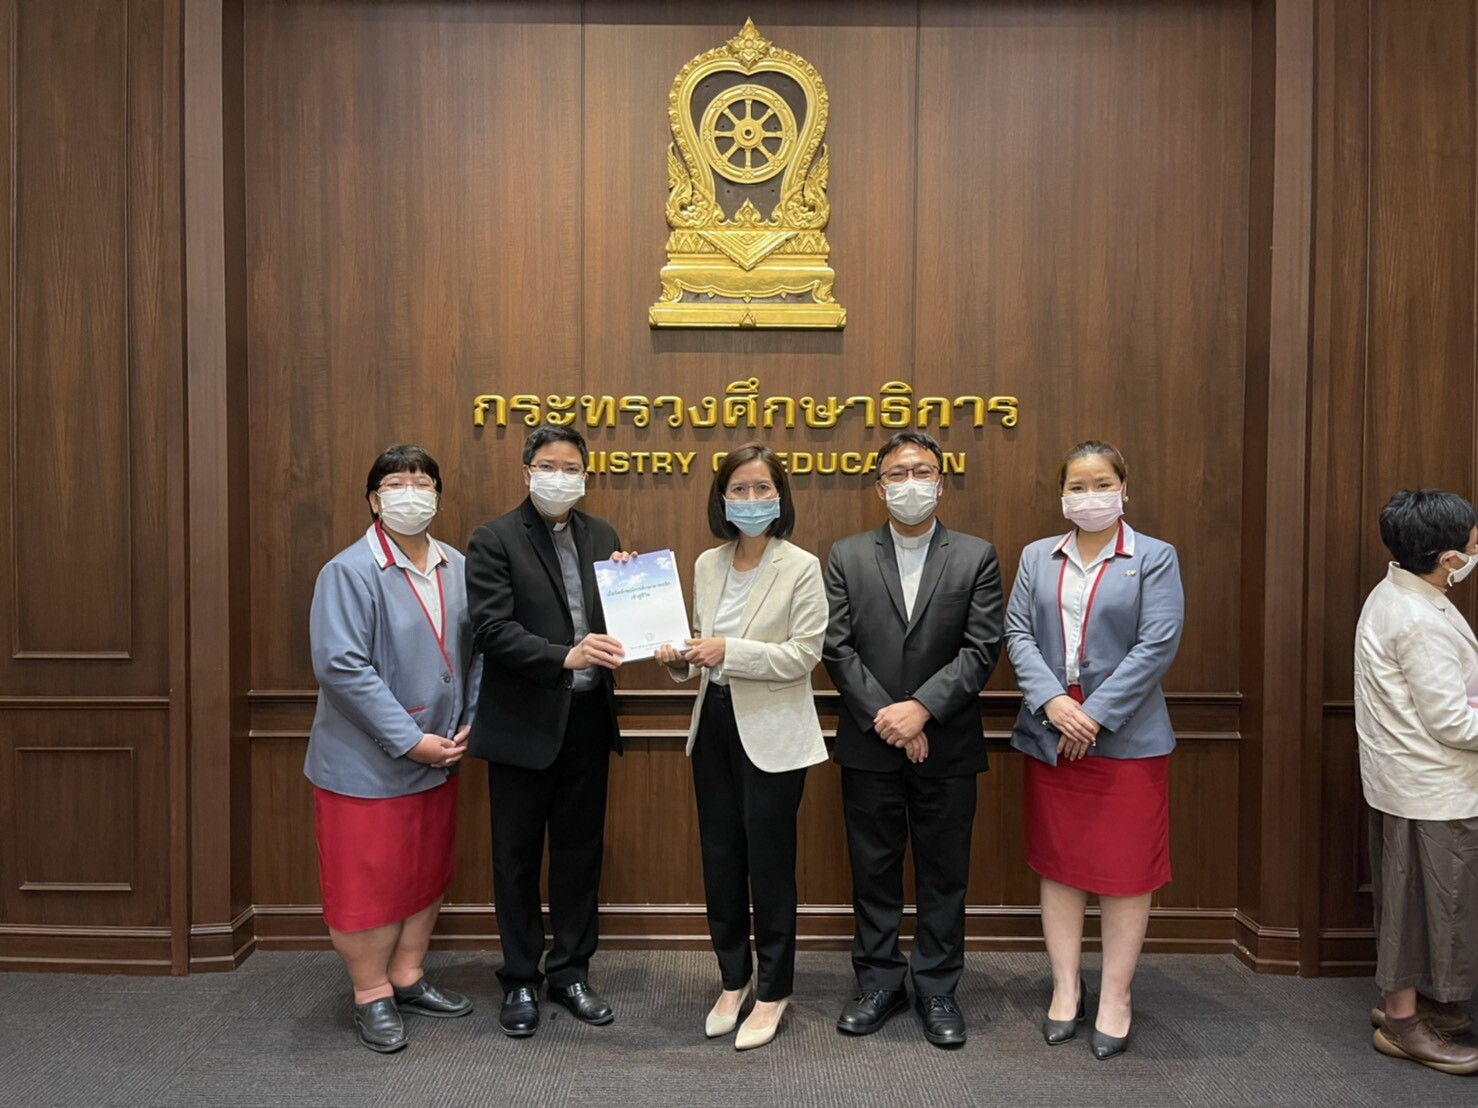 โรงเรียนอัสสัมชัญสมุทรปราการ เป็นตัวแทนโรงเรียนในเครือมูลนิธิคณะเซนต์คาเบรียลแห่งประเทศไทยเข้าพบรัฐมนตรีว่าการกระทรวงศึกษาธิการ ประชุมอย่างไม่เป็นทางการ